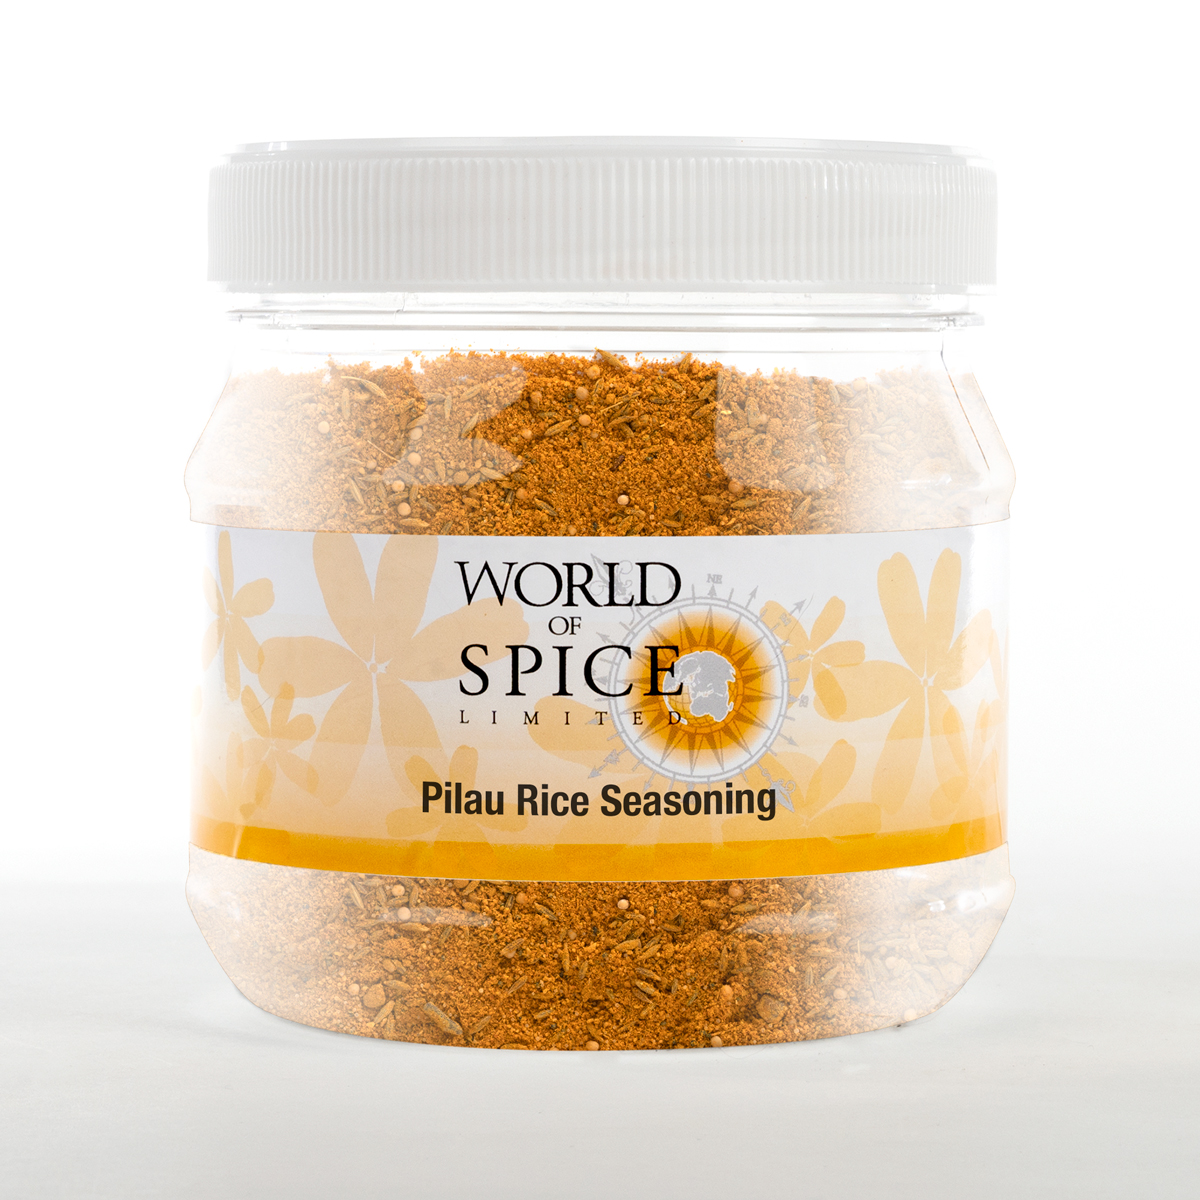 buy dried herbs online - tub of pilau rice seasoning